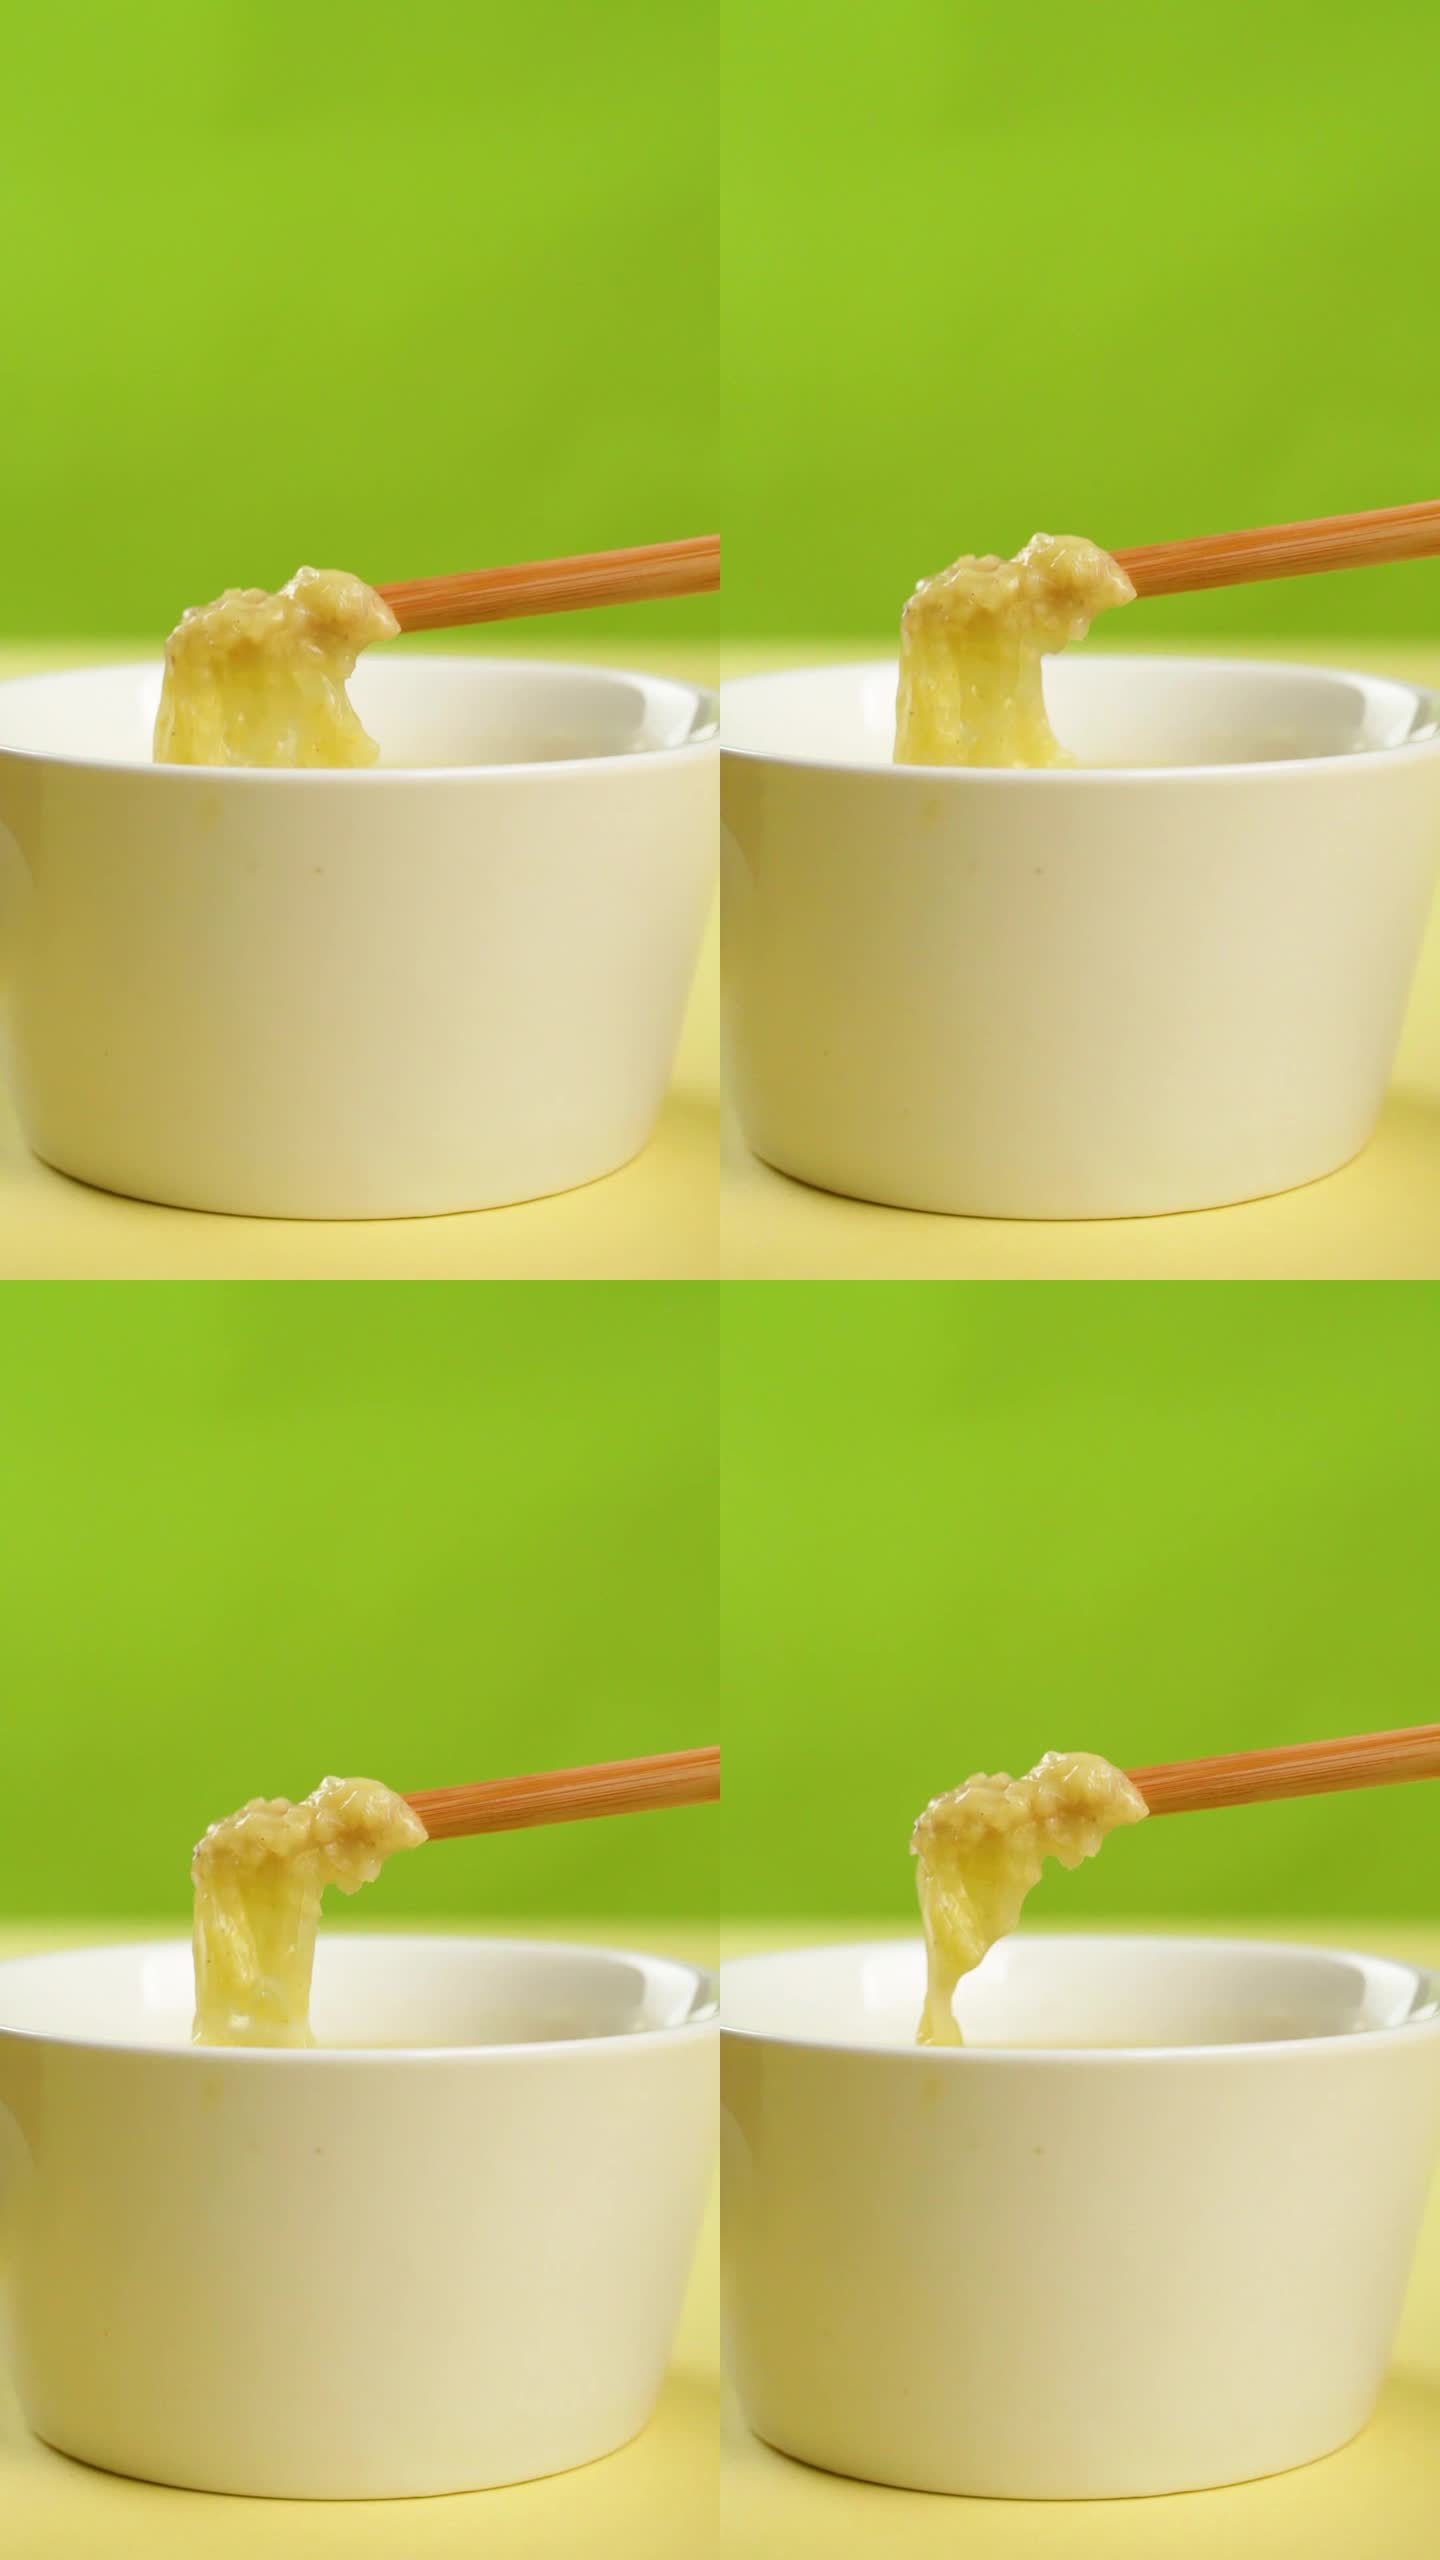 筷子捞起小米粥的奶皮